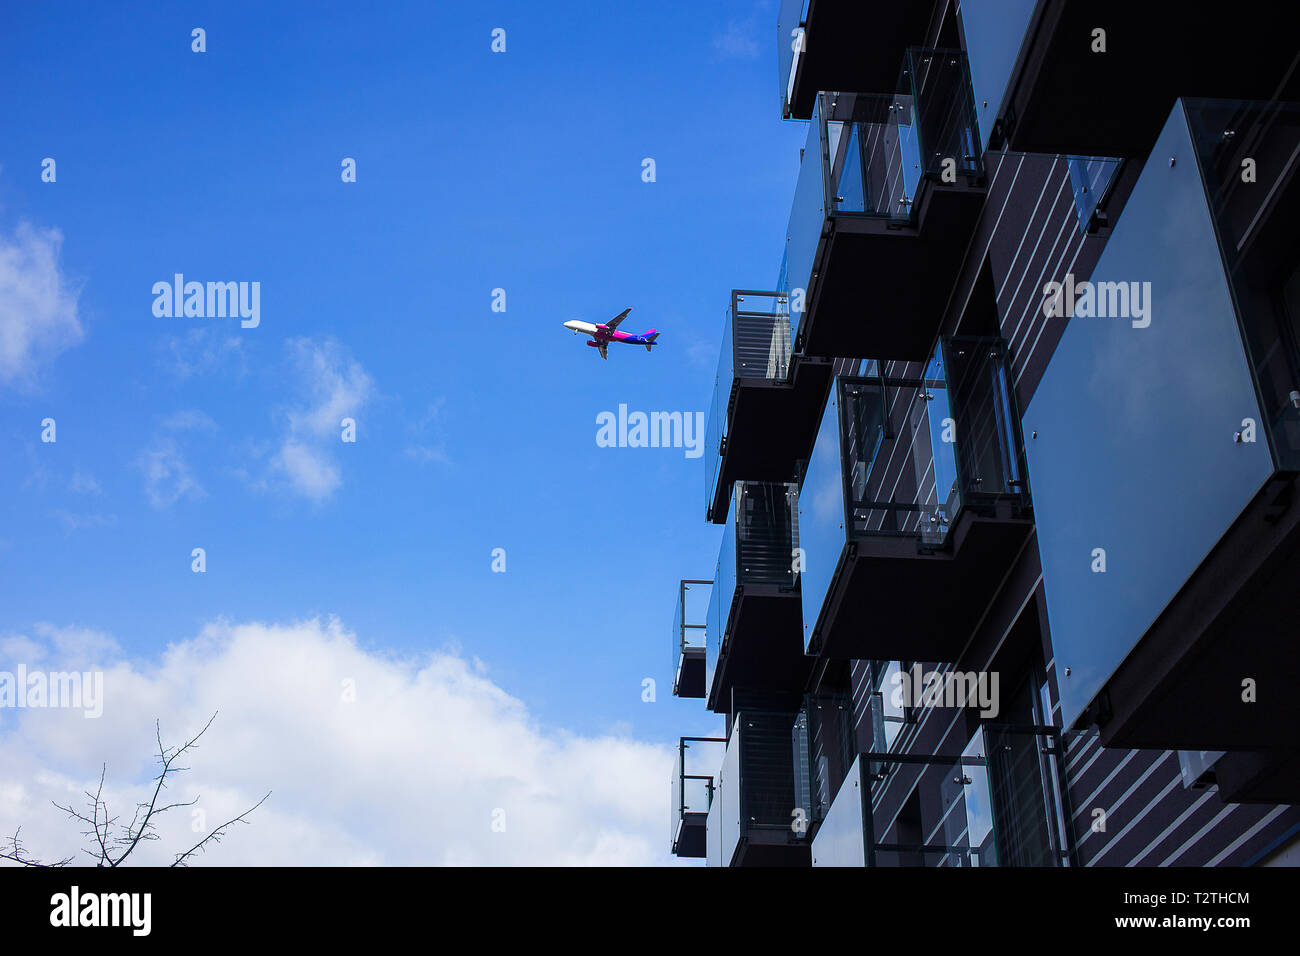 Poznan - Polonia / 16 de marzo de 2019, el avión está volando sobre nuevo edificio de apartamentos de lujo en uno de los últimos vuelos, húngaro presupuesto de aerolíneas Wizz Air Foto de stock